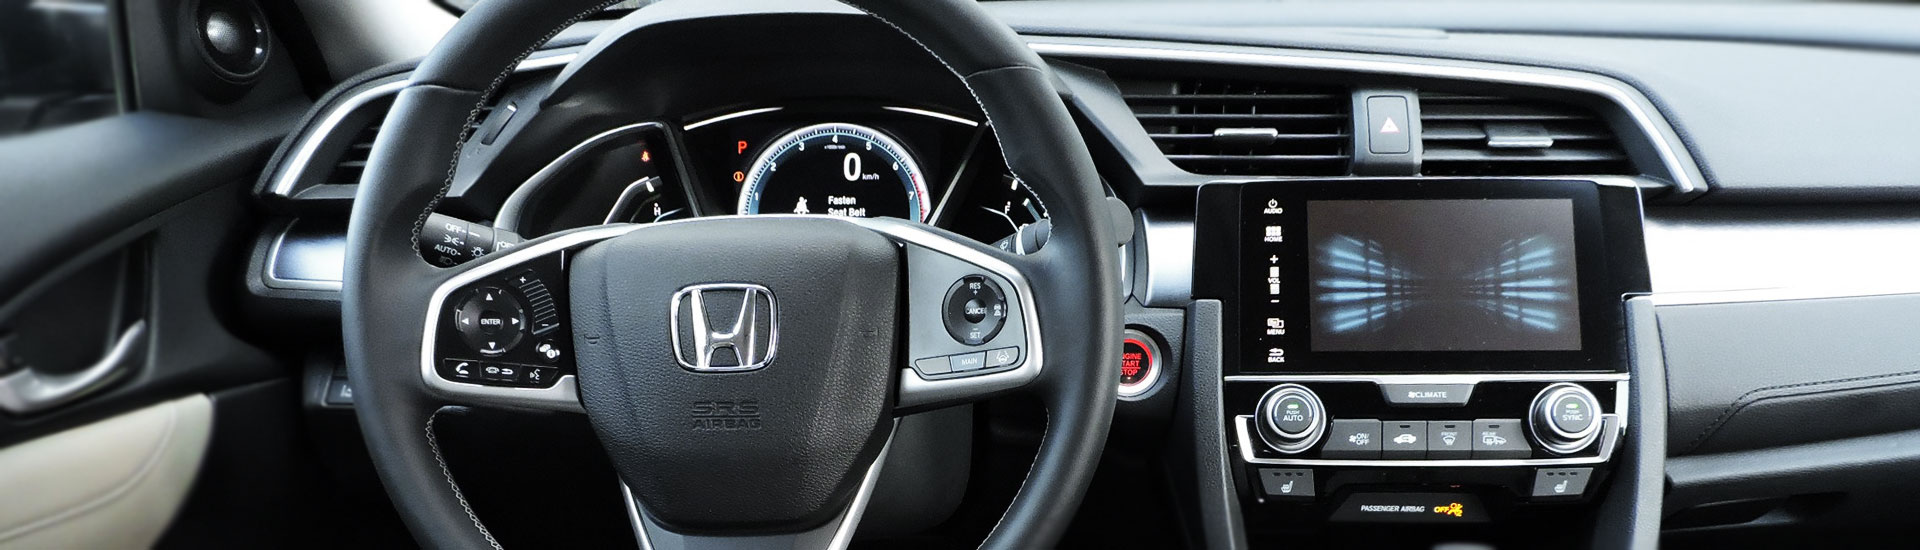 2022 Honda Pilot Custom Dash Kits